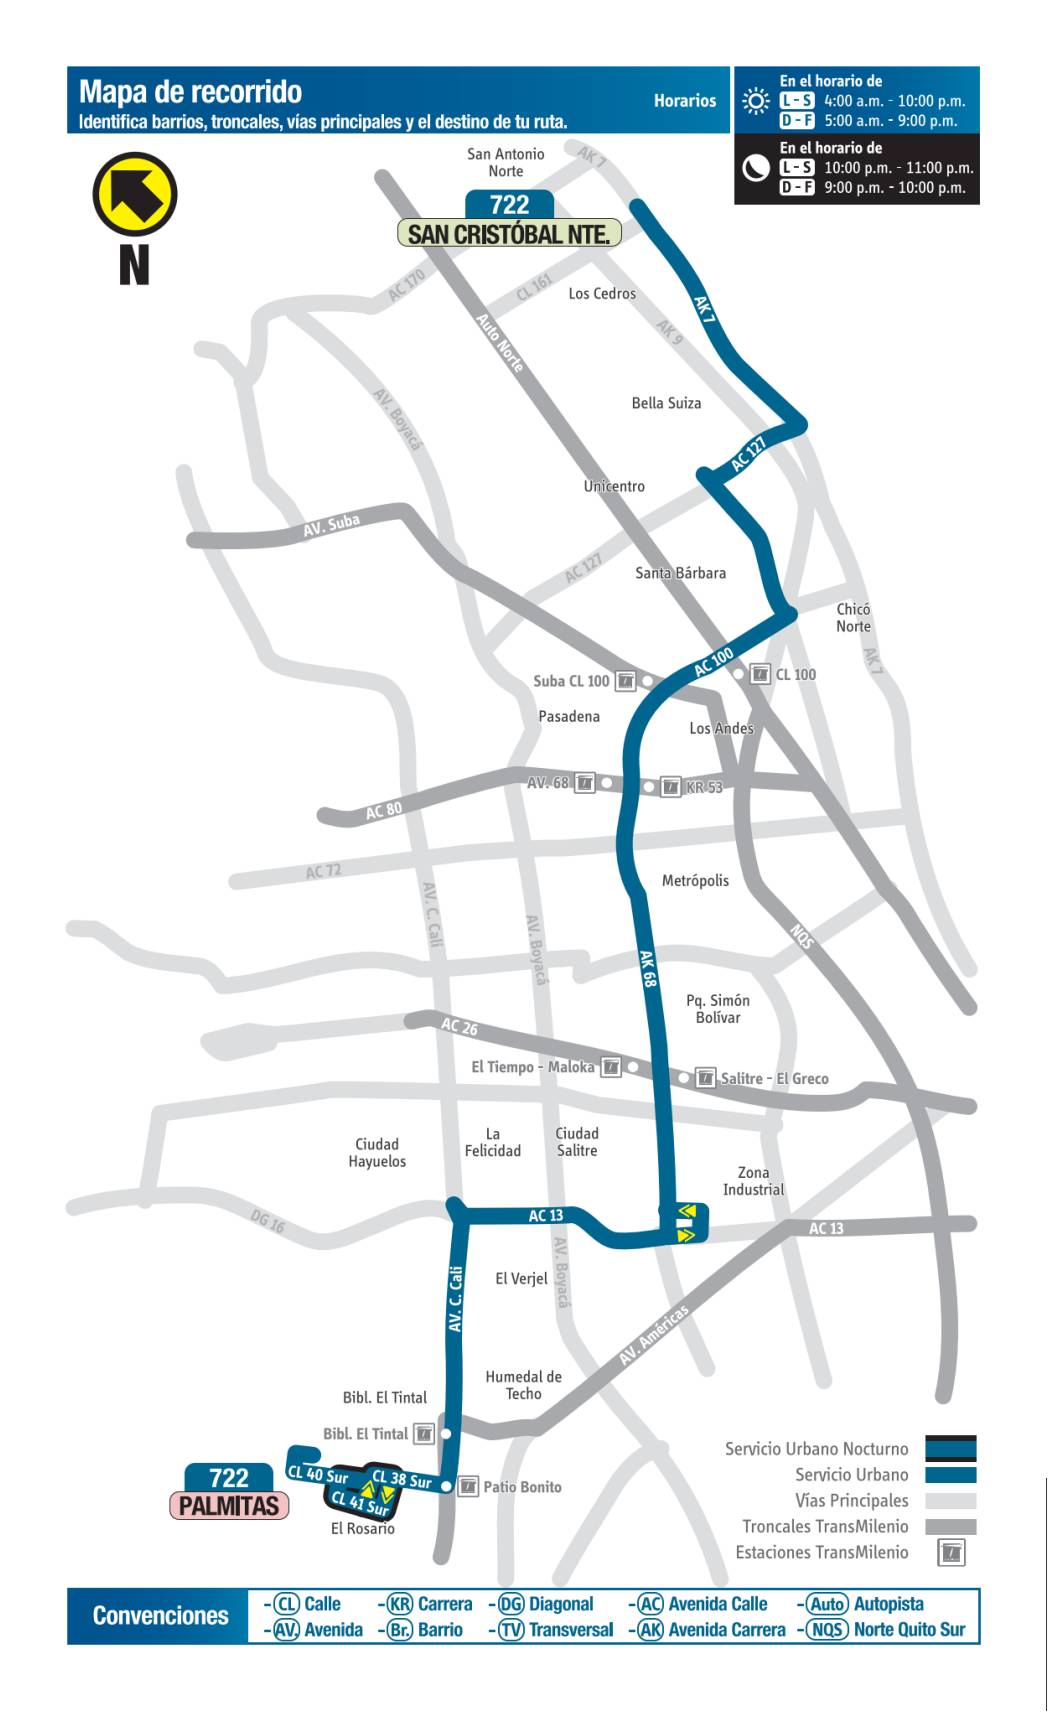 722 Palmitas - San Cristóbal Norte, mapa bus urbano Bogotá